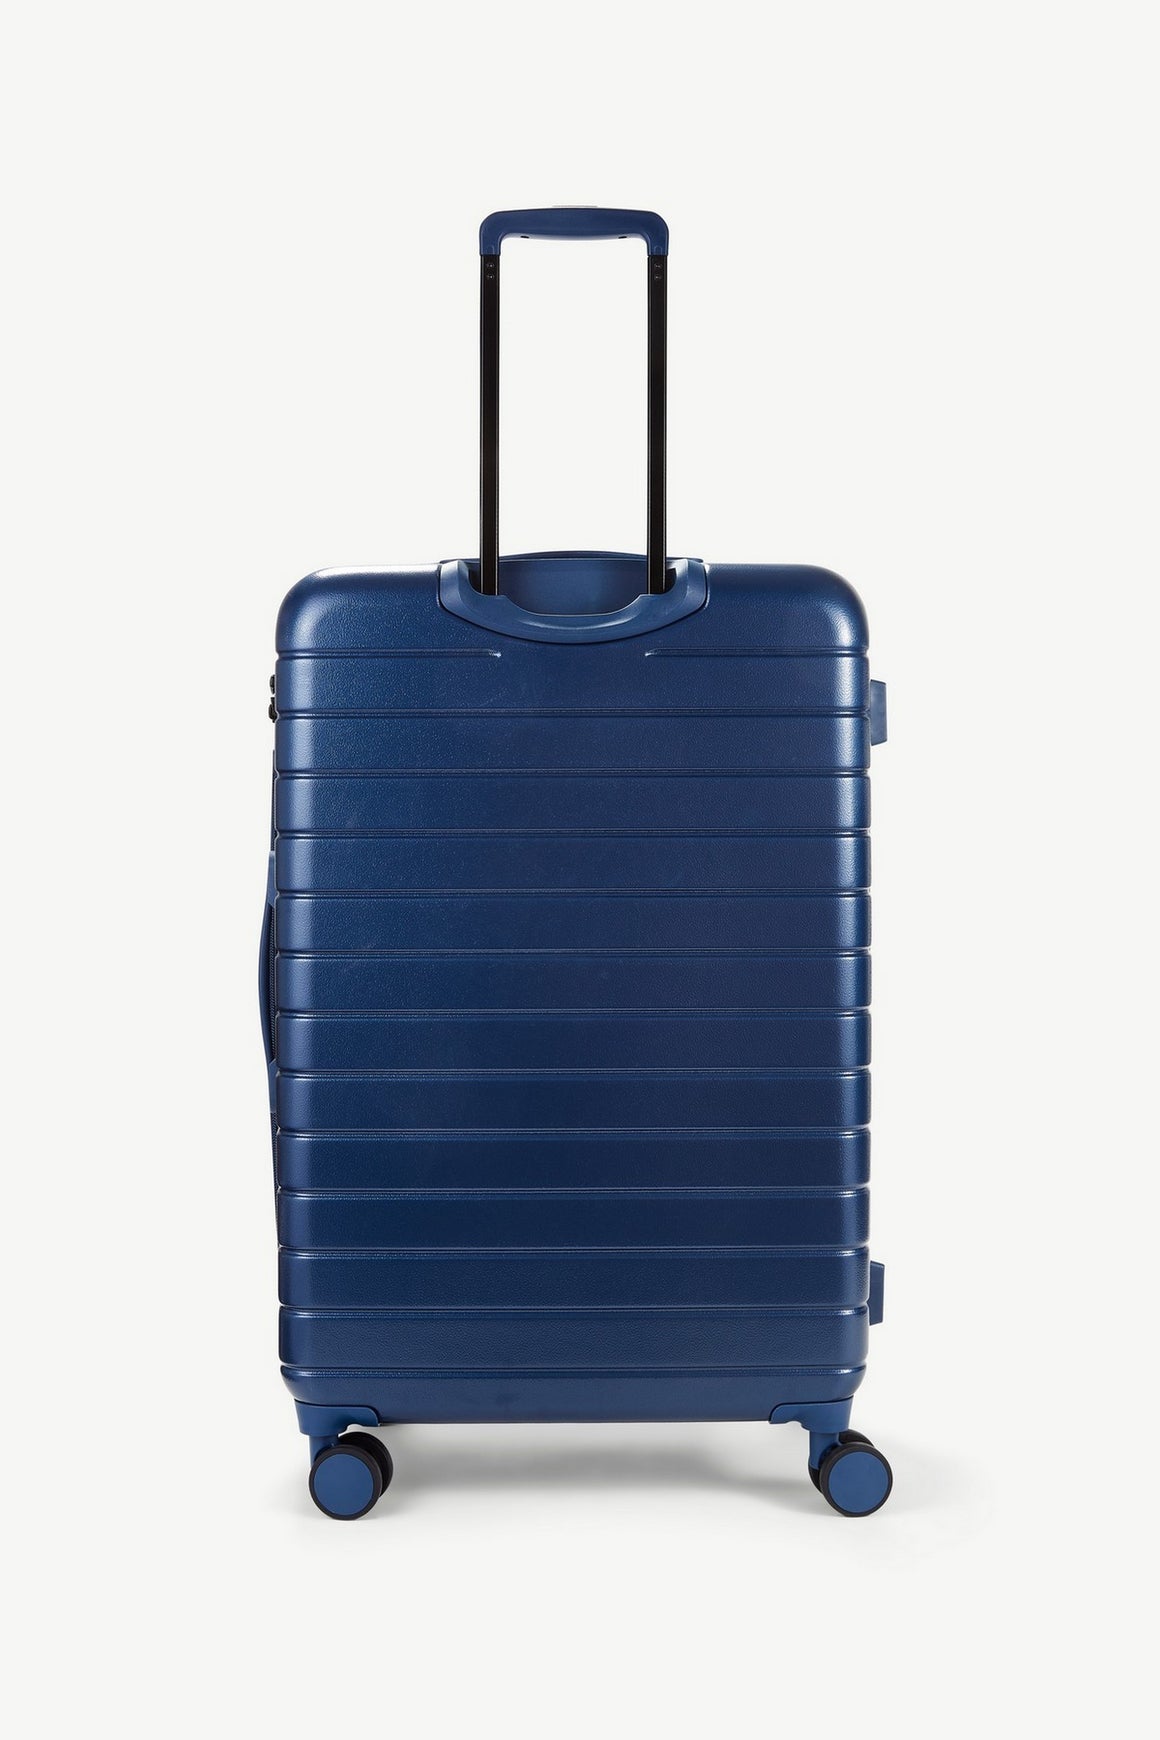 Novo Large Suitcase